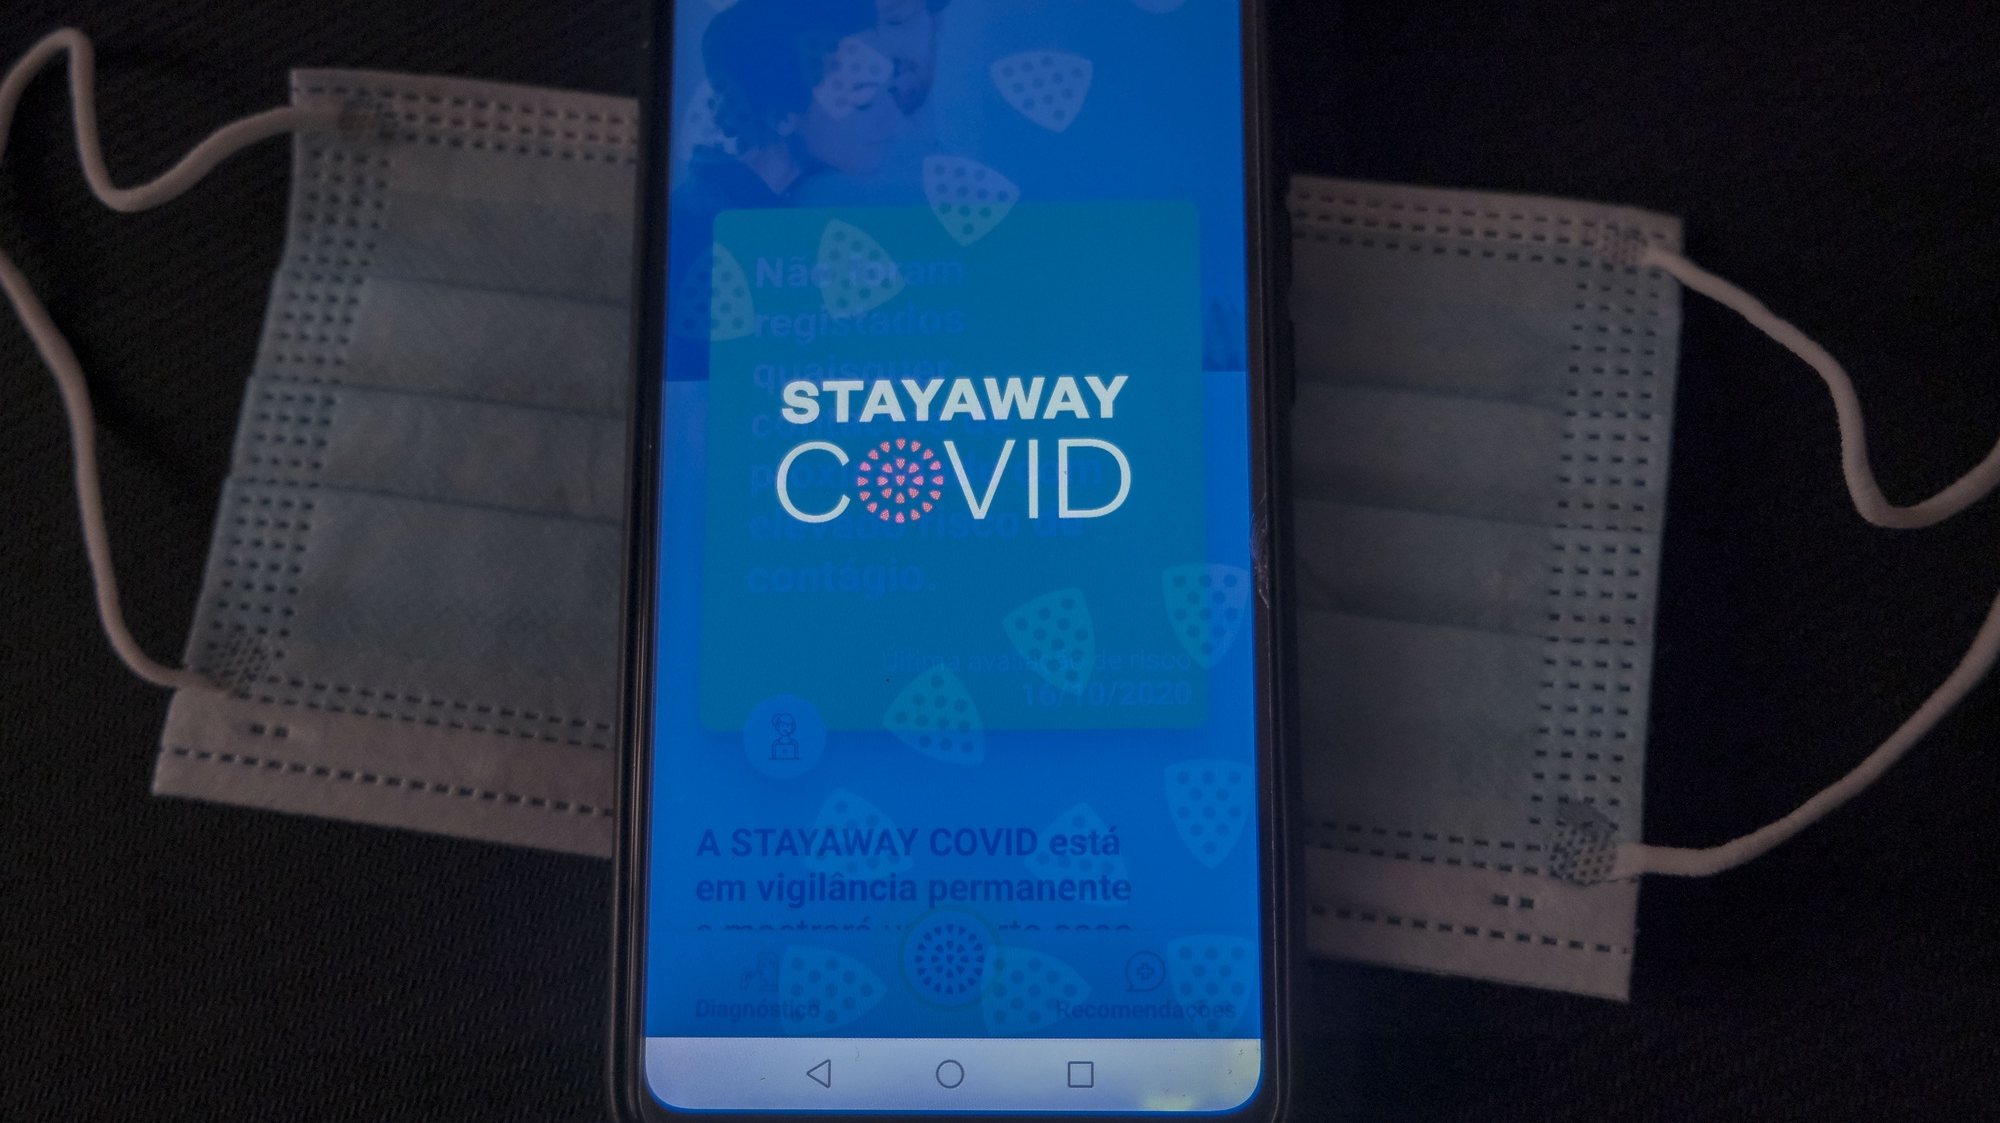 A app StayAway Covid, que pretende identificar potenciais exposições a pessoas infetadas com Covid-19,  Lisboa, 16 de outubrode 2020. ANTÓNIO COTRIM/LUSA